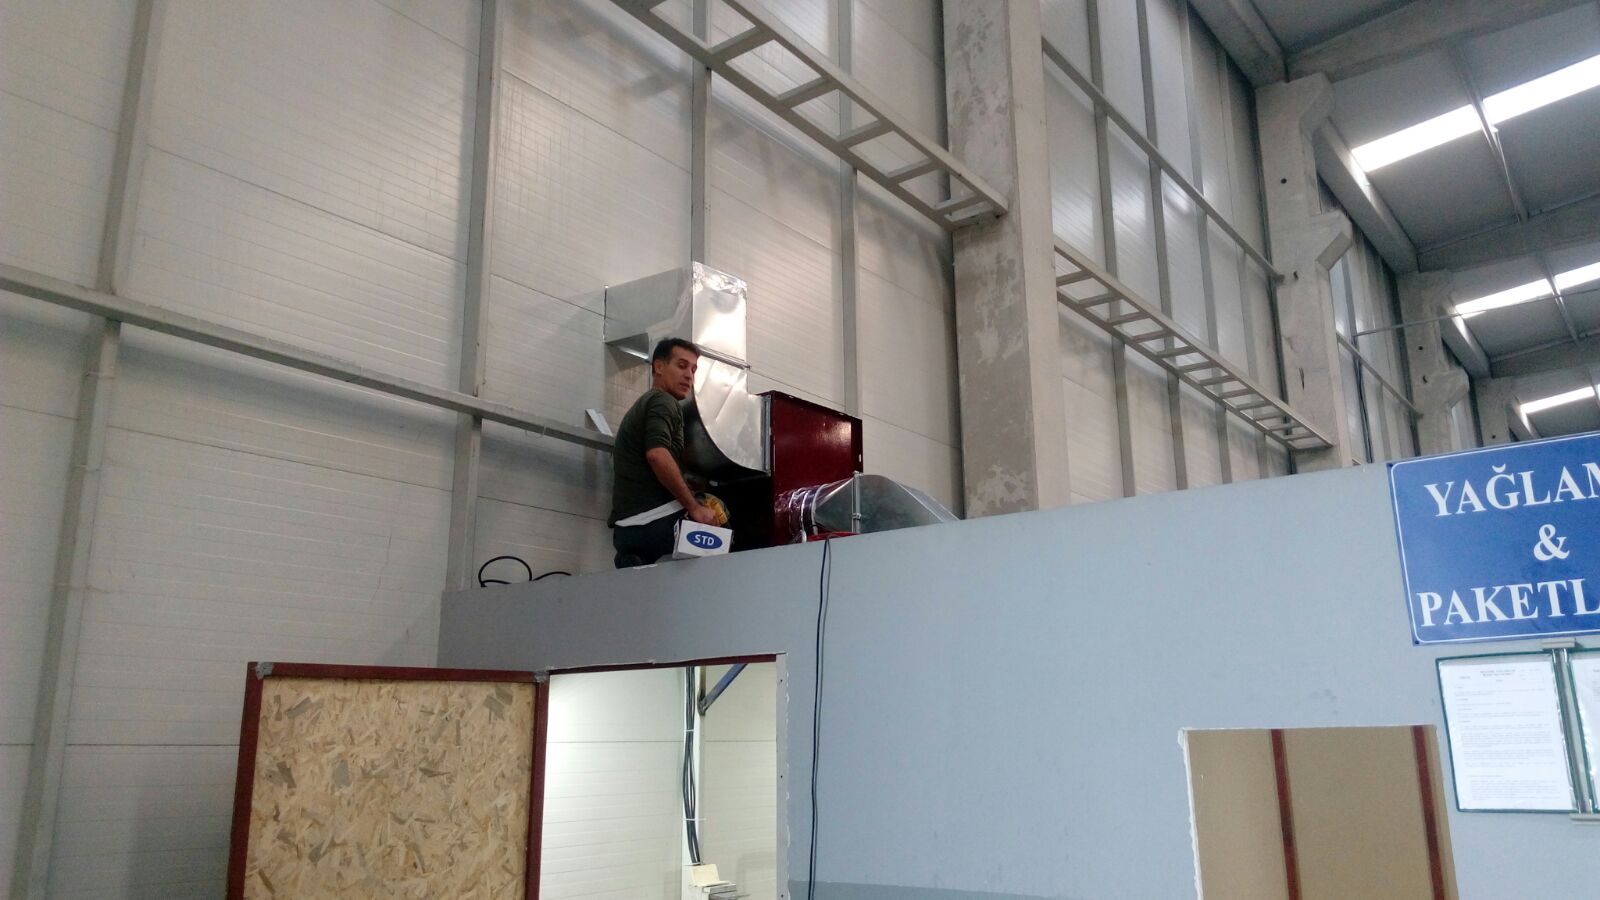   Ankara krom davlumbaz havalandırma sistemleri baca çift cidarlı baca evyeli tezgah çalışma tezgahı esmatik rüzgar gülü 0549 549 76 09